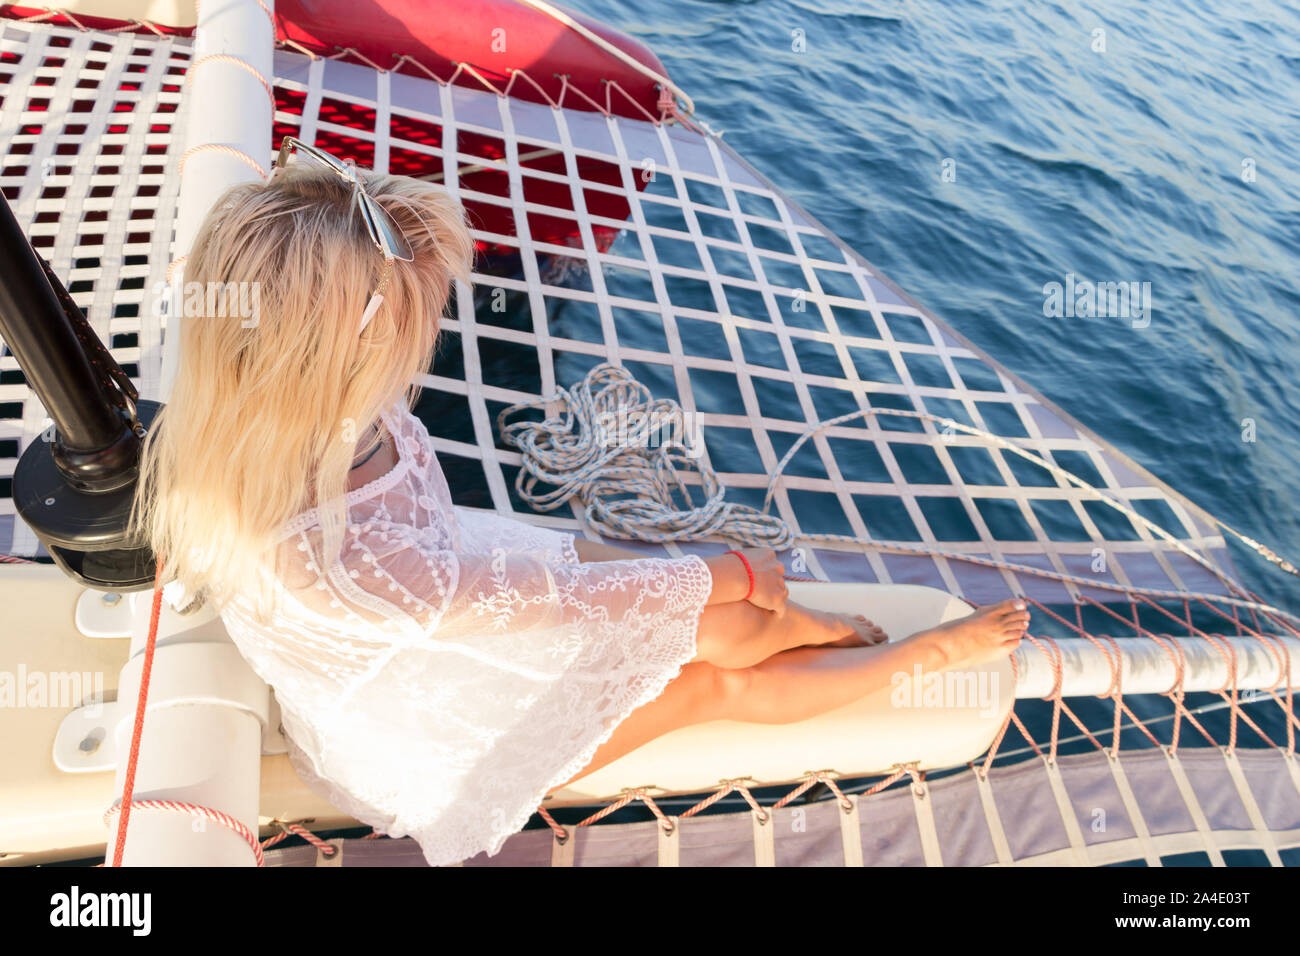 Très belle jeune femme blonde vêtue d'un maillot de bain et paréo blanc assis sur un yacht pendant bow voyage maritime. Vue de côté. Selective focus sur les cheveux Banque D'Images